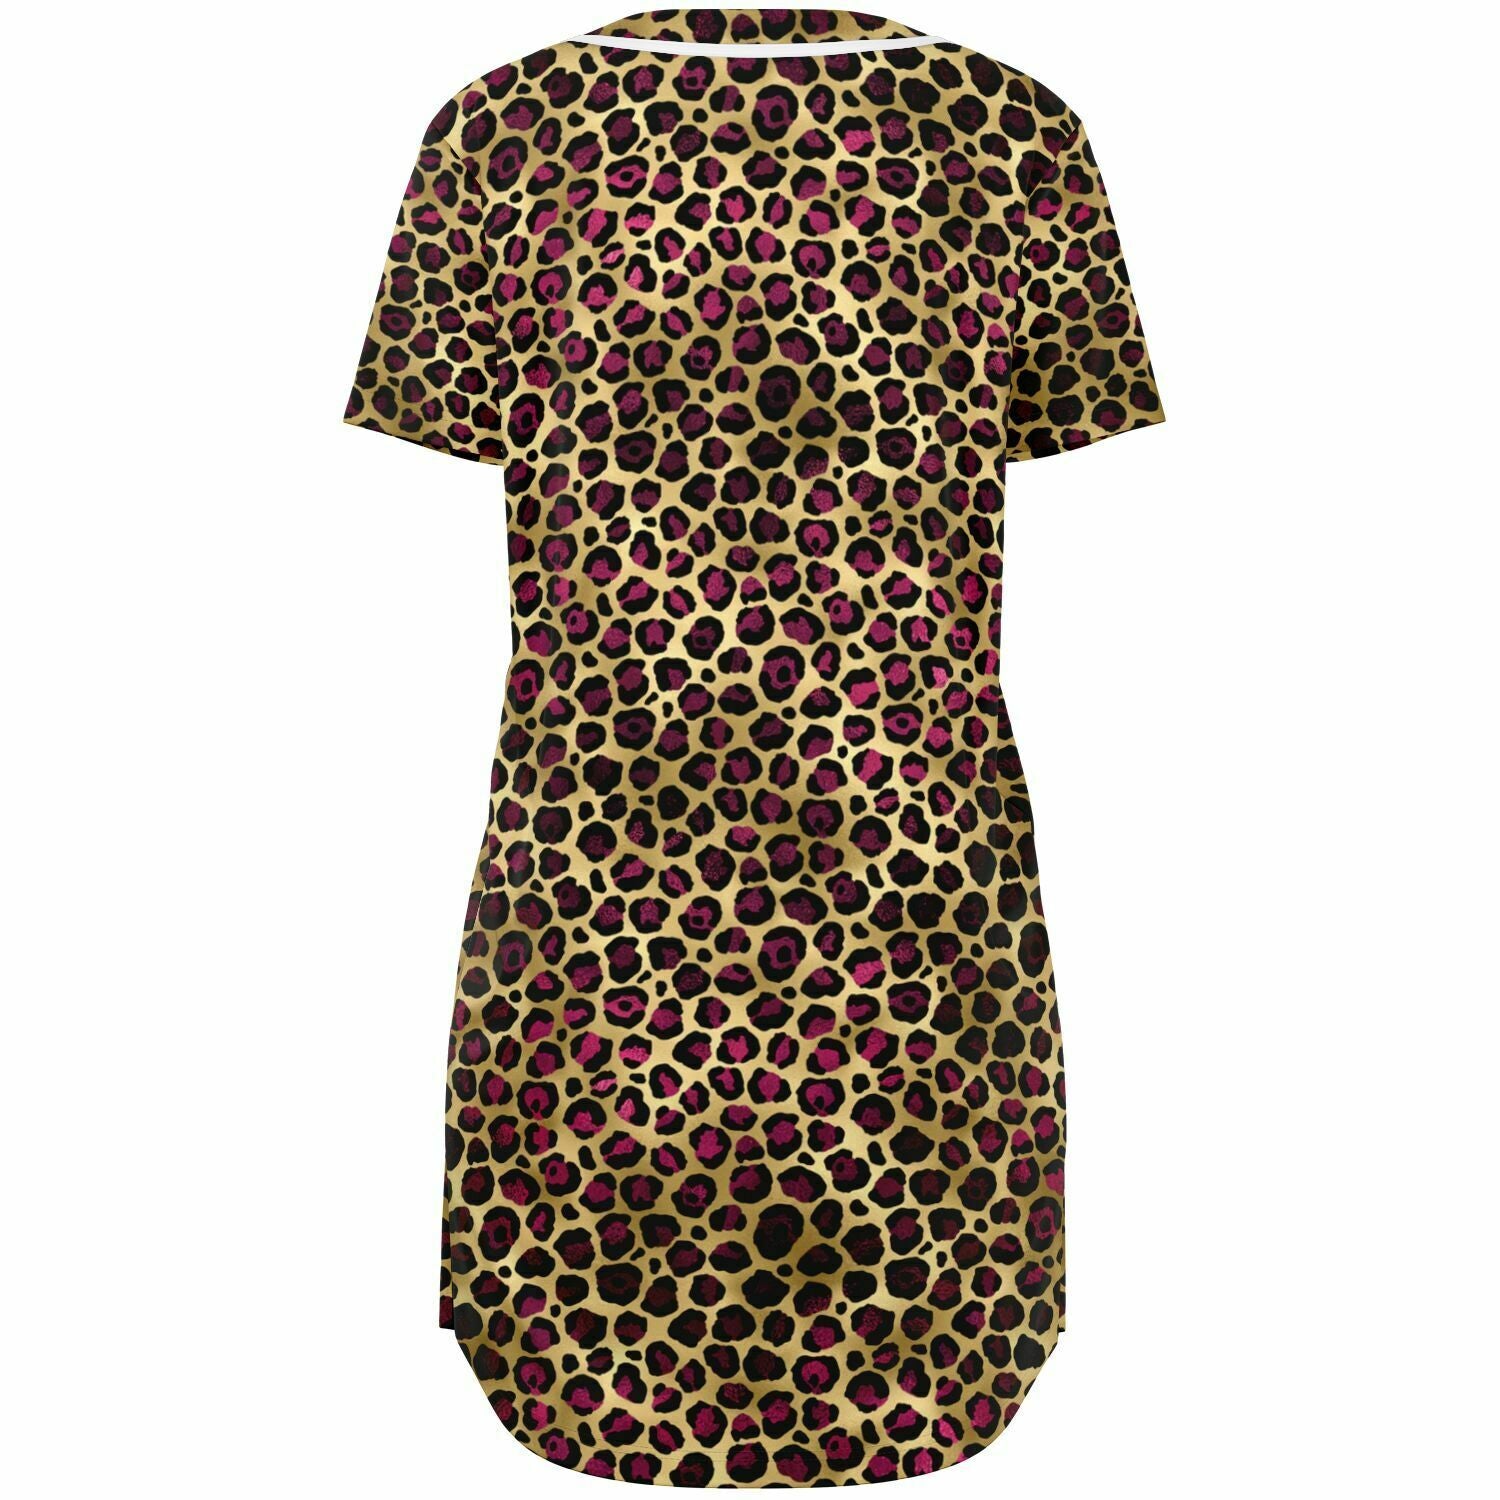 Leopard Print Baseball Jersey Dress - AOP